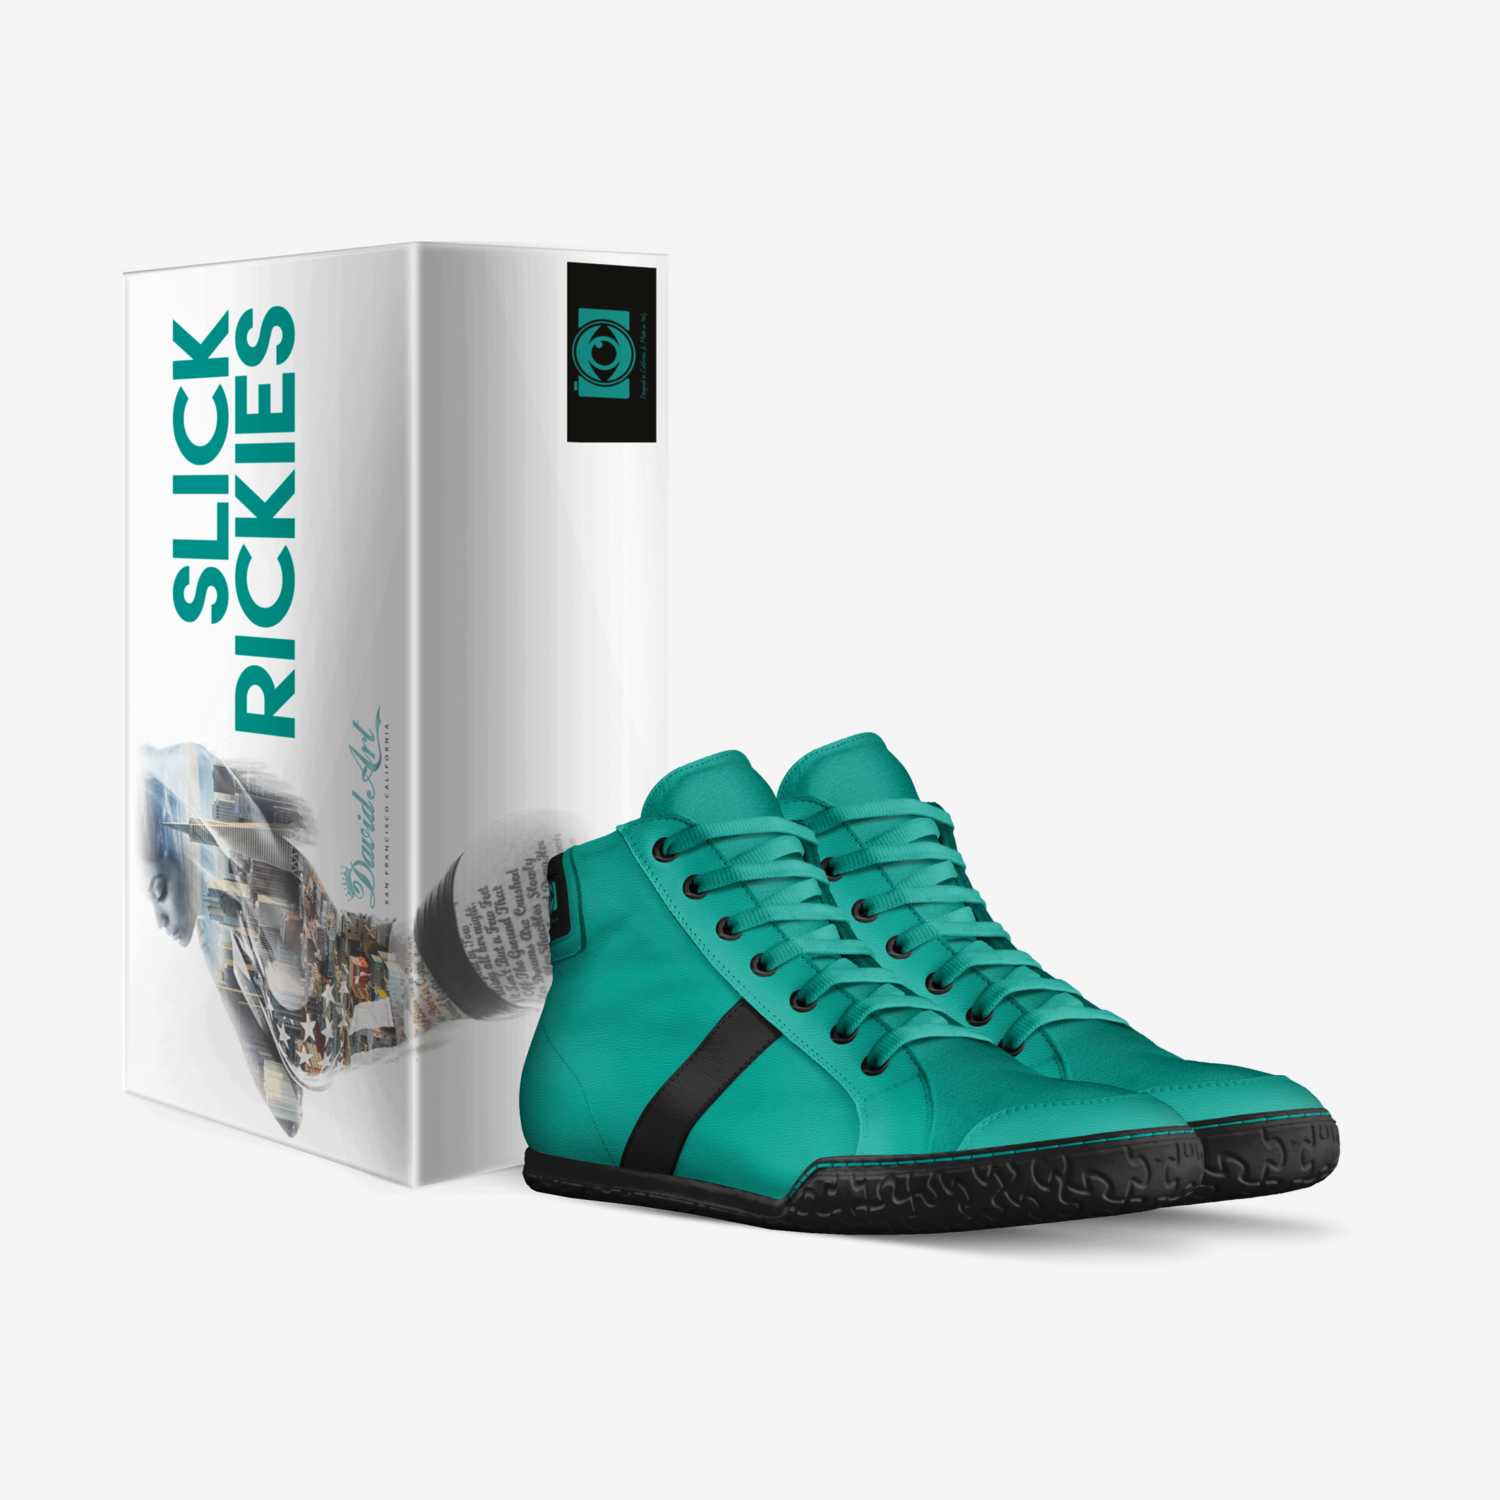 RDA Slick Rickies custom made in Italy shoes by David Art | Box view